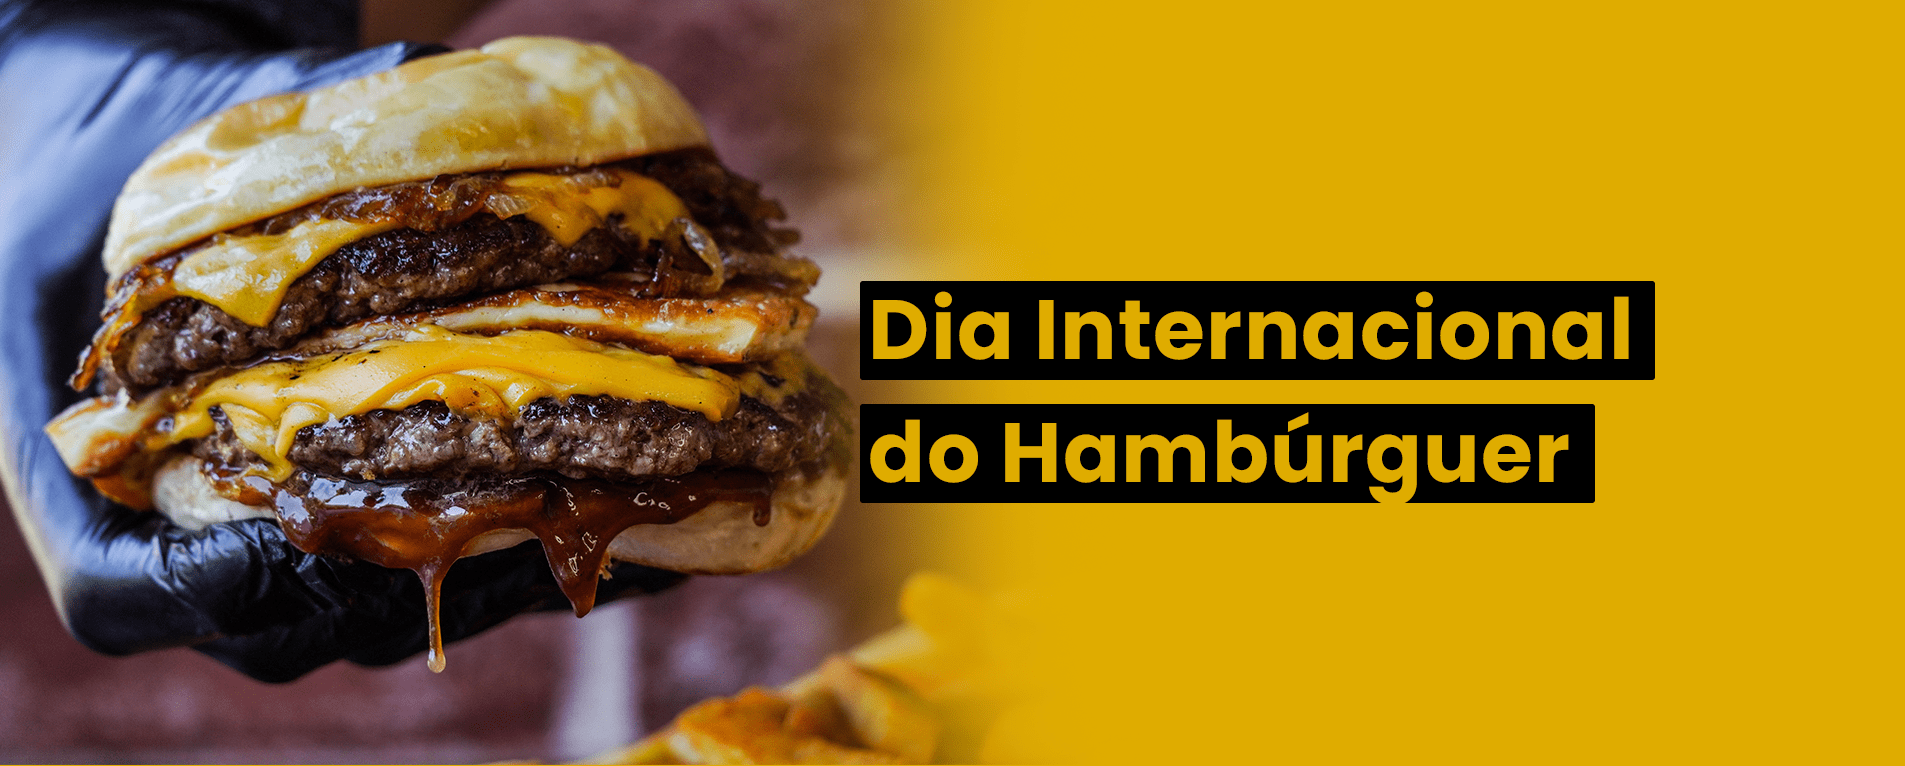 Conheça 7 Tipos de Hambúrguer no Dia Internacional do Hambúrguer